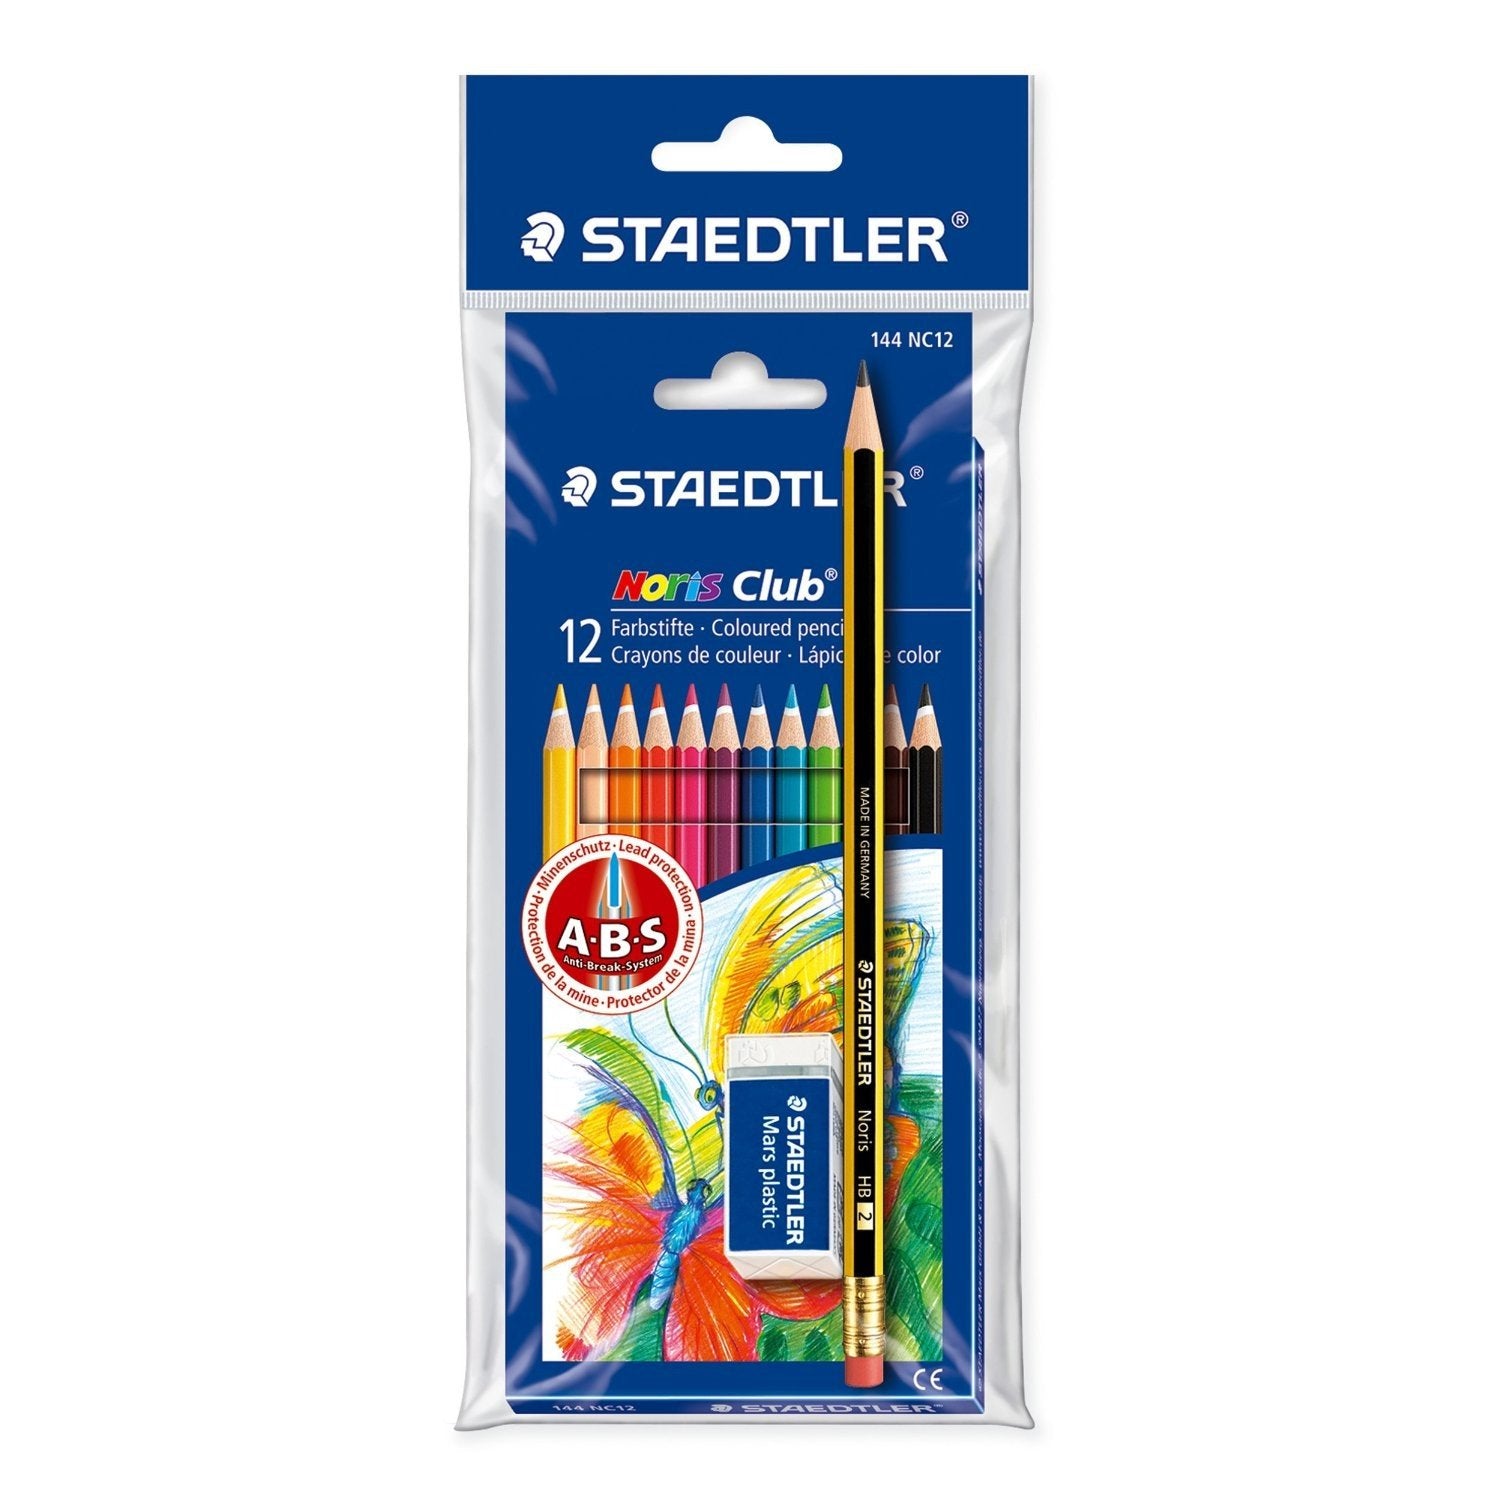 مجموعة أقلام تلوين ستيدلر نوريس كلوب 12 قلم تلوين